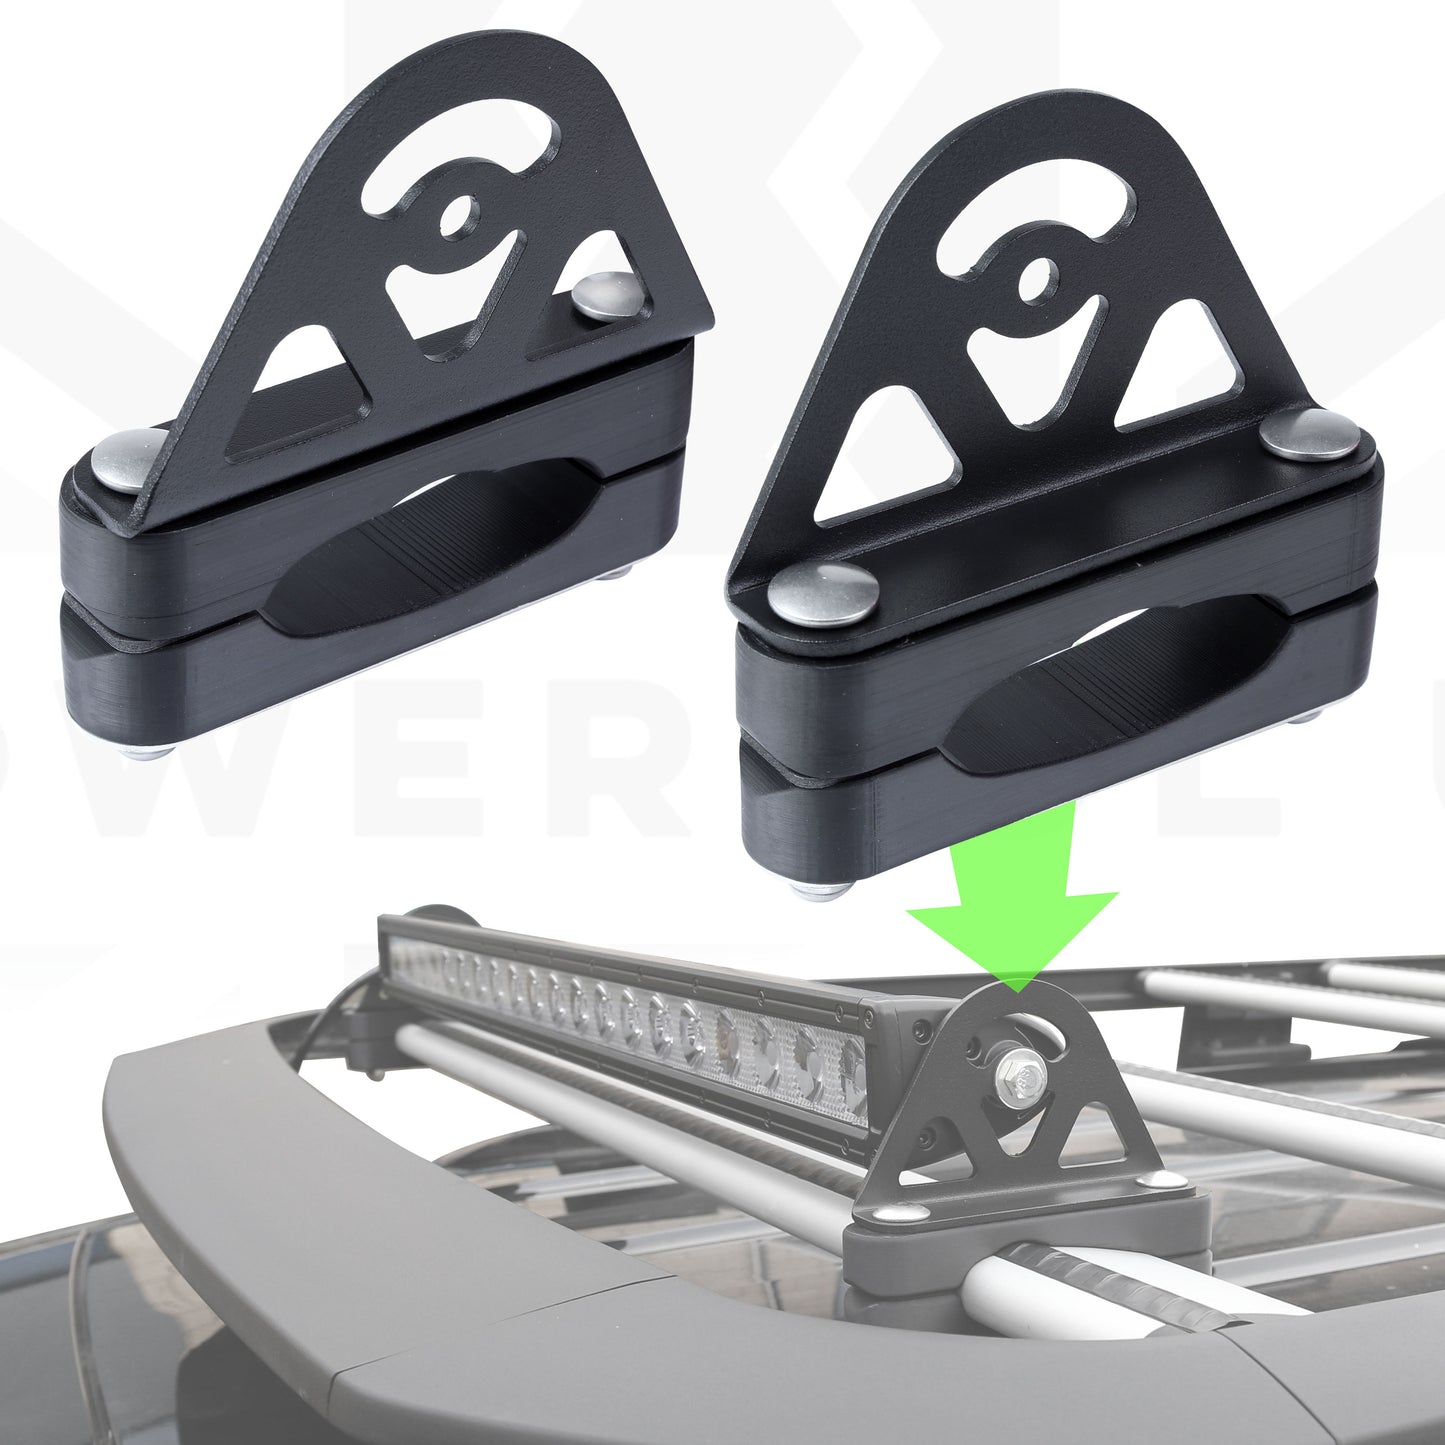 CROSS BAR Mount Clamp Kit for VW Transporter T5 & T6 Van - Kit D (Black)